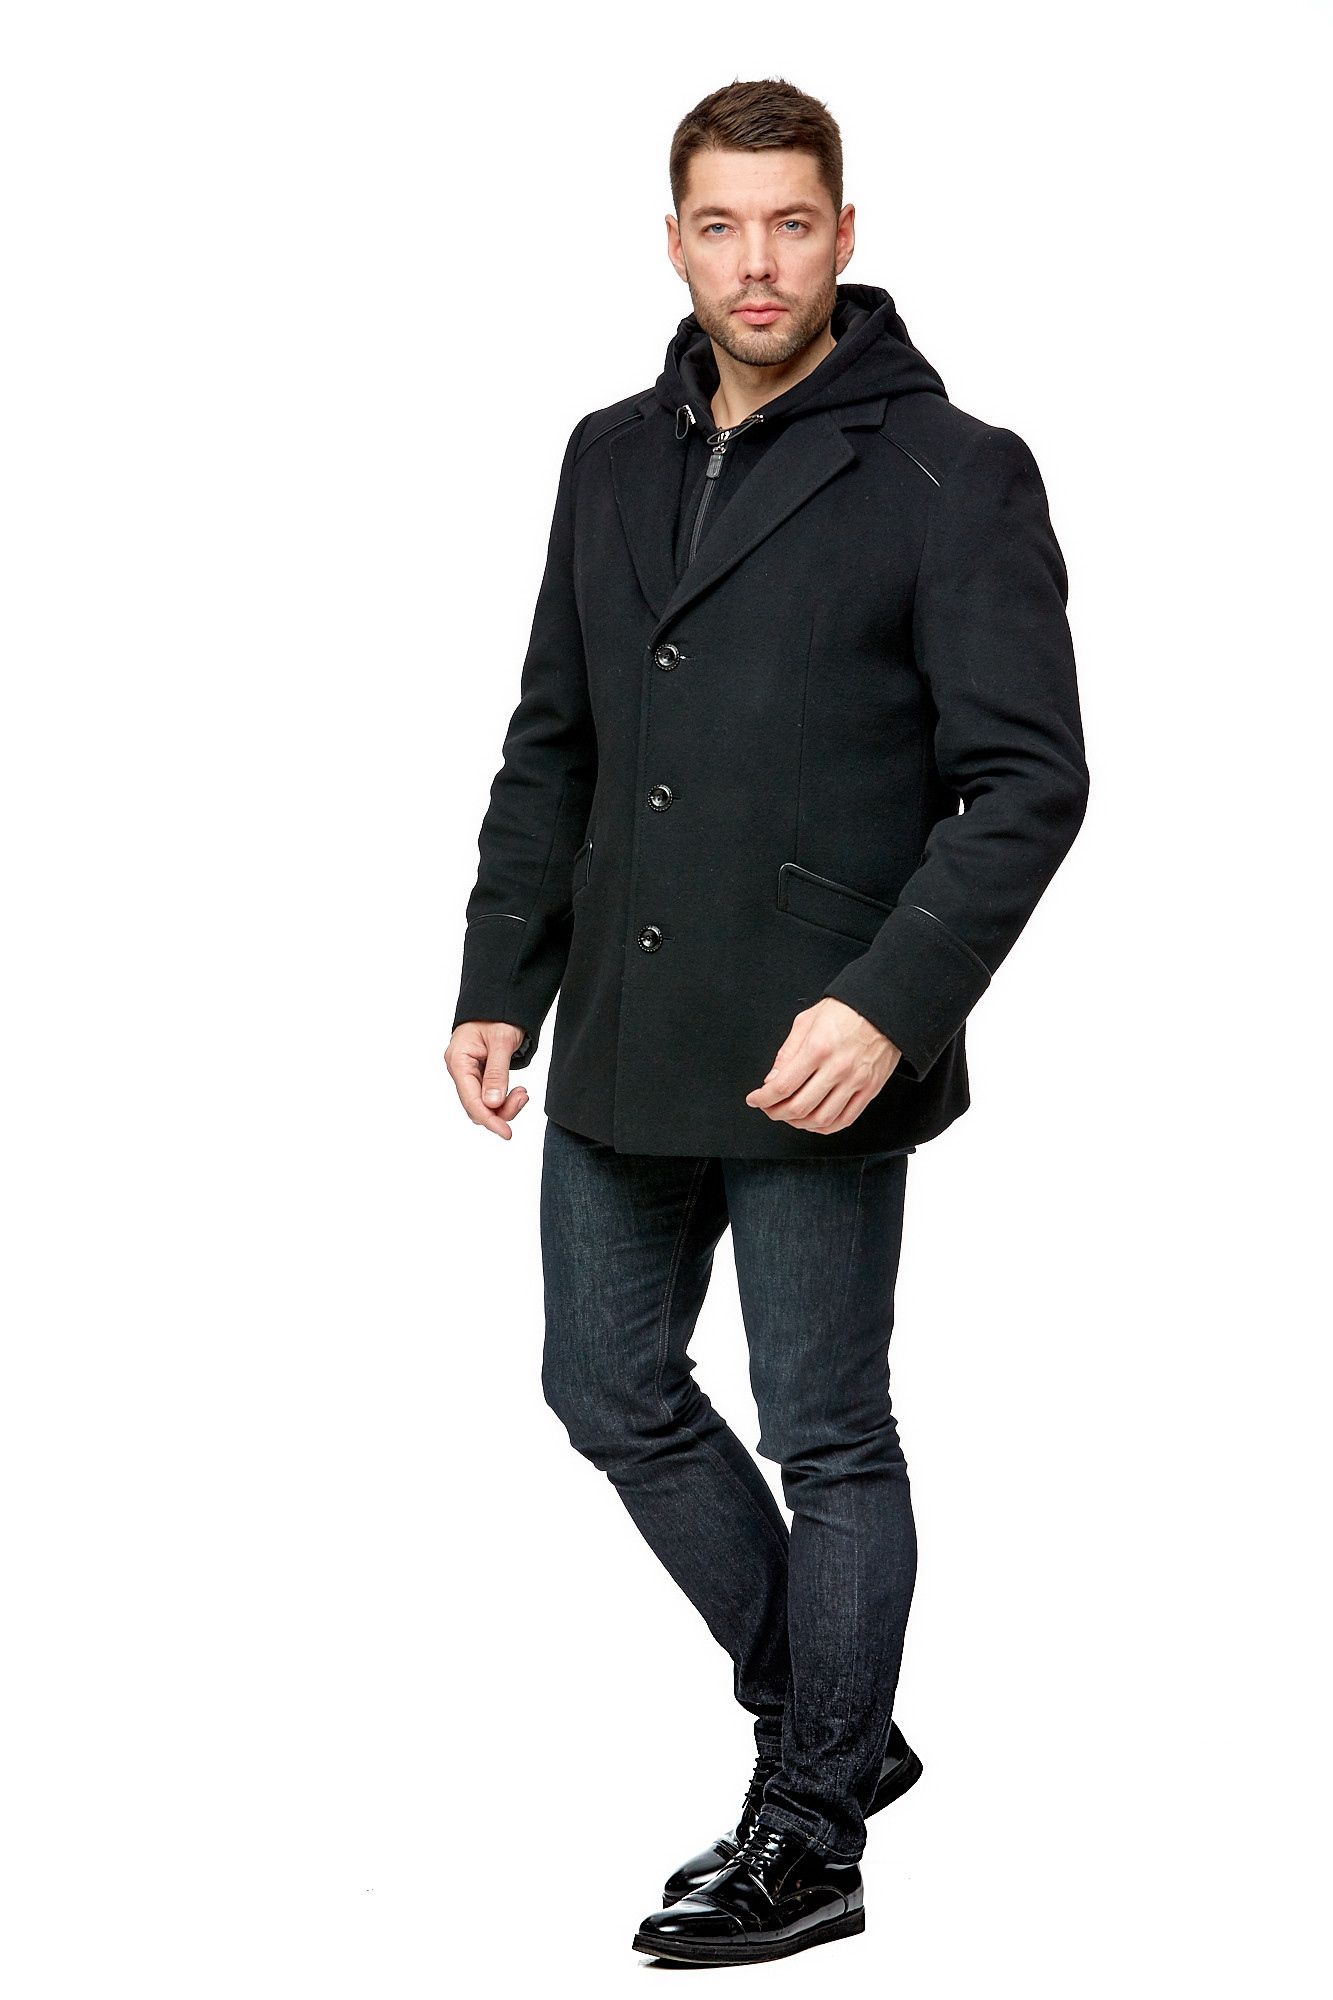 Мужское пальто из текстиля с капюшоном